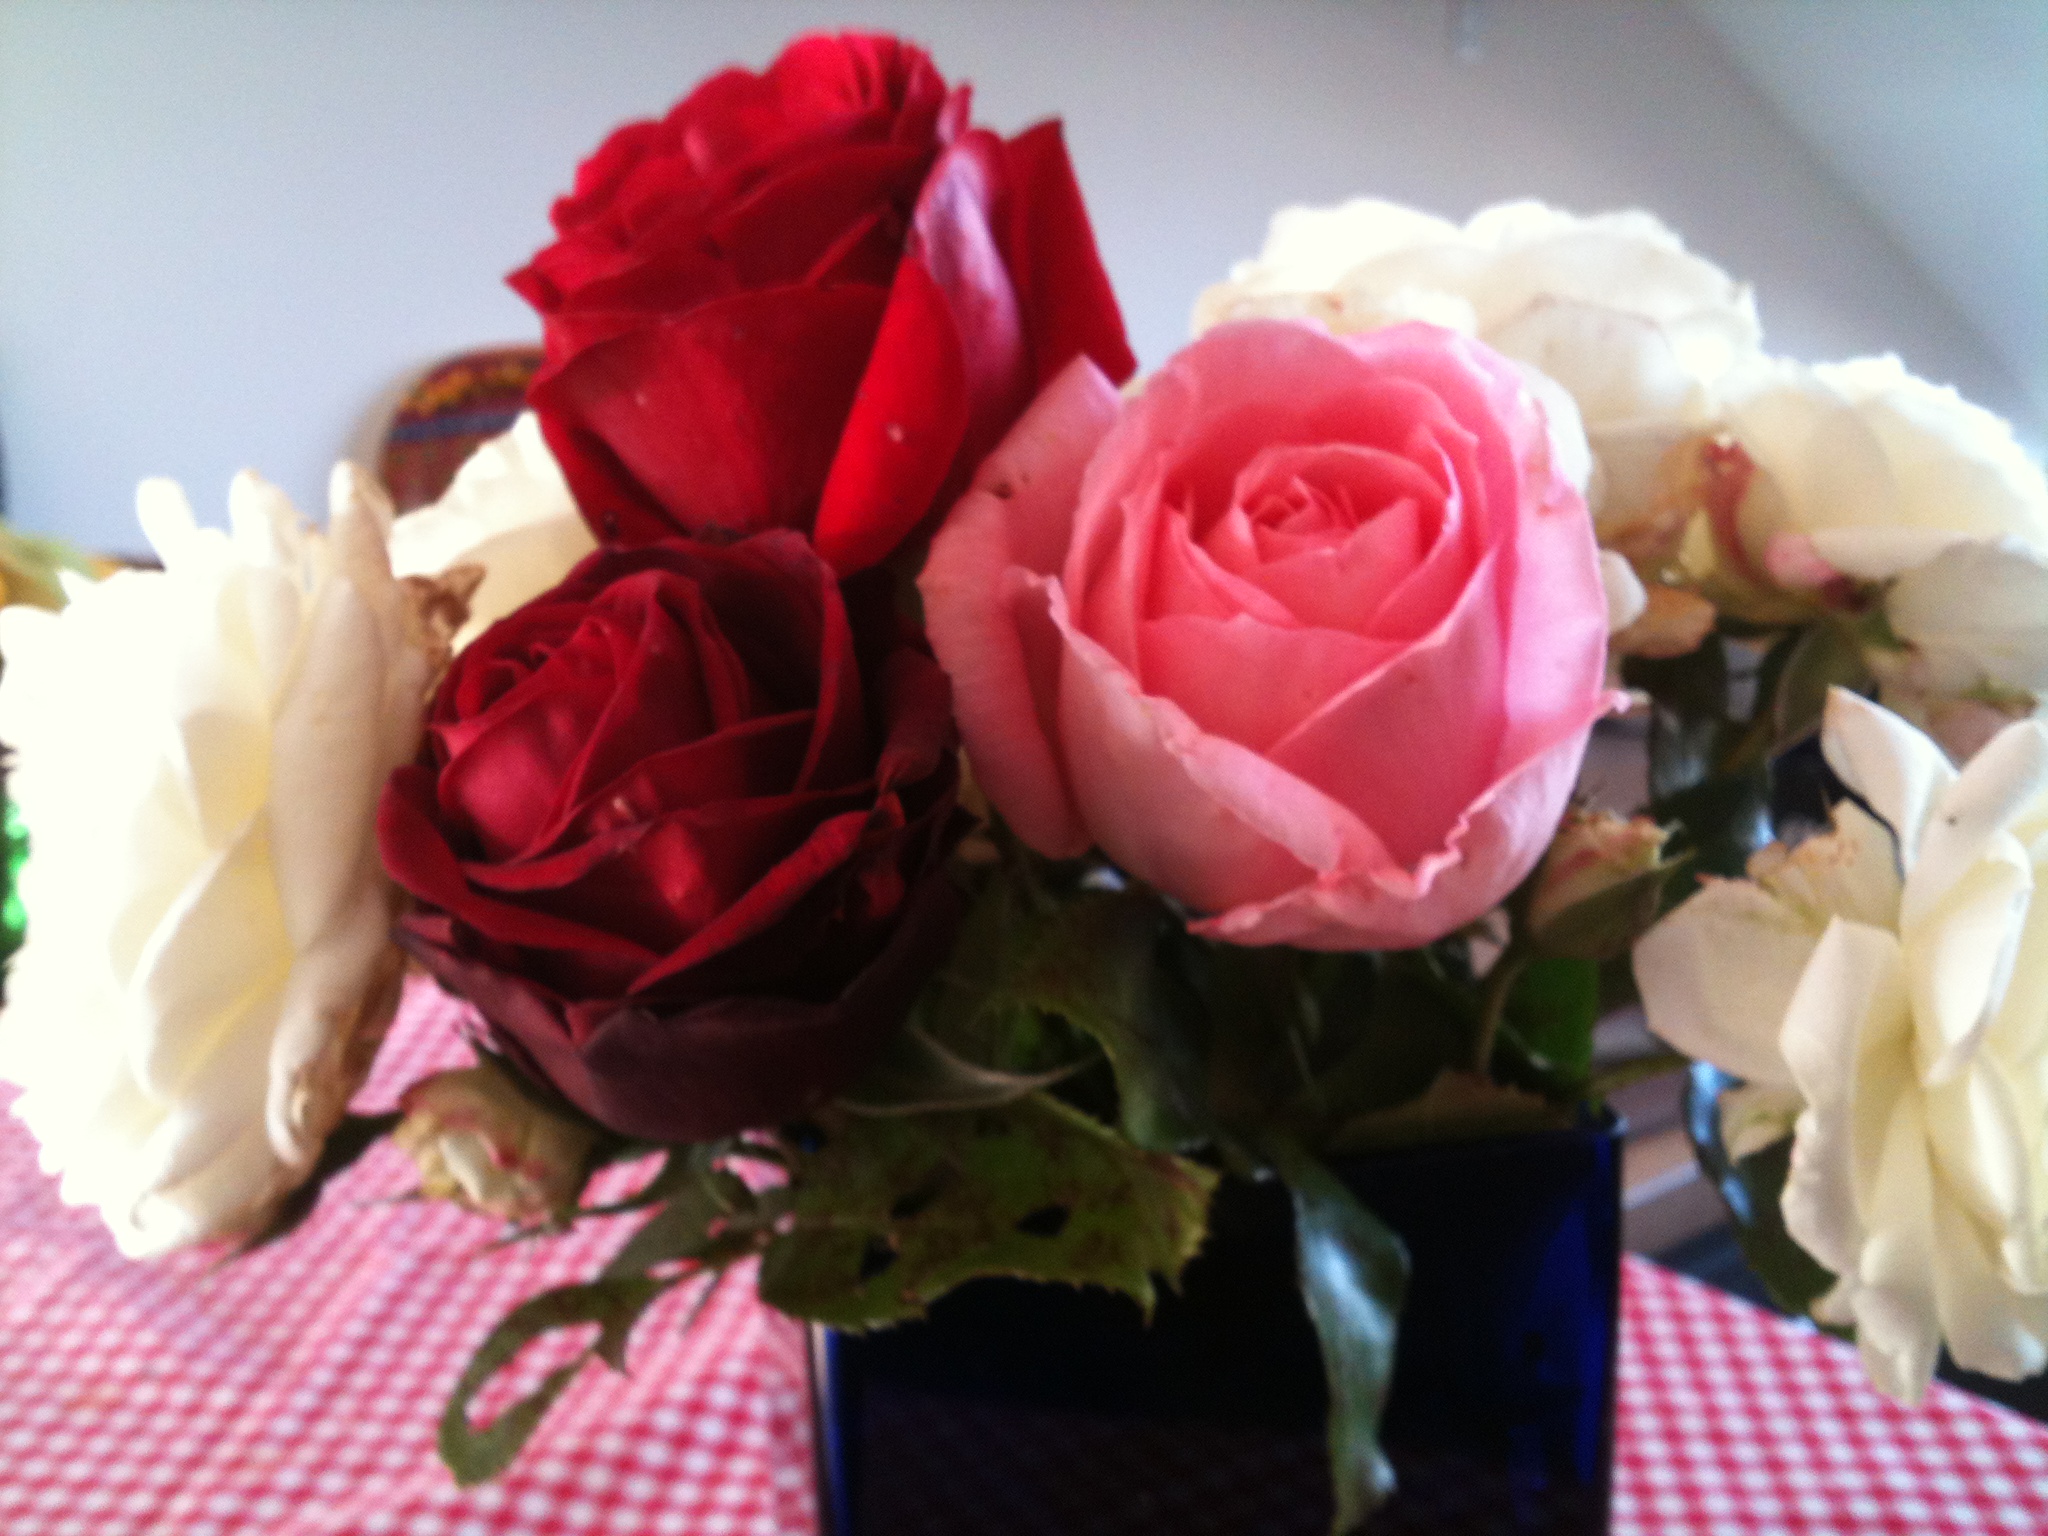 Roses representing appreciation